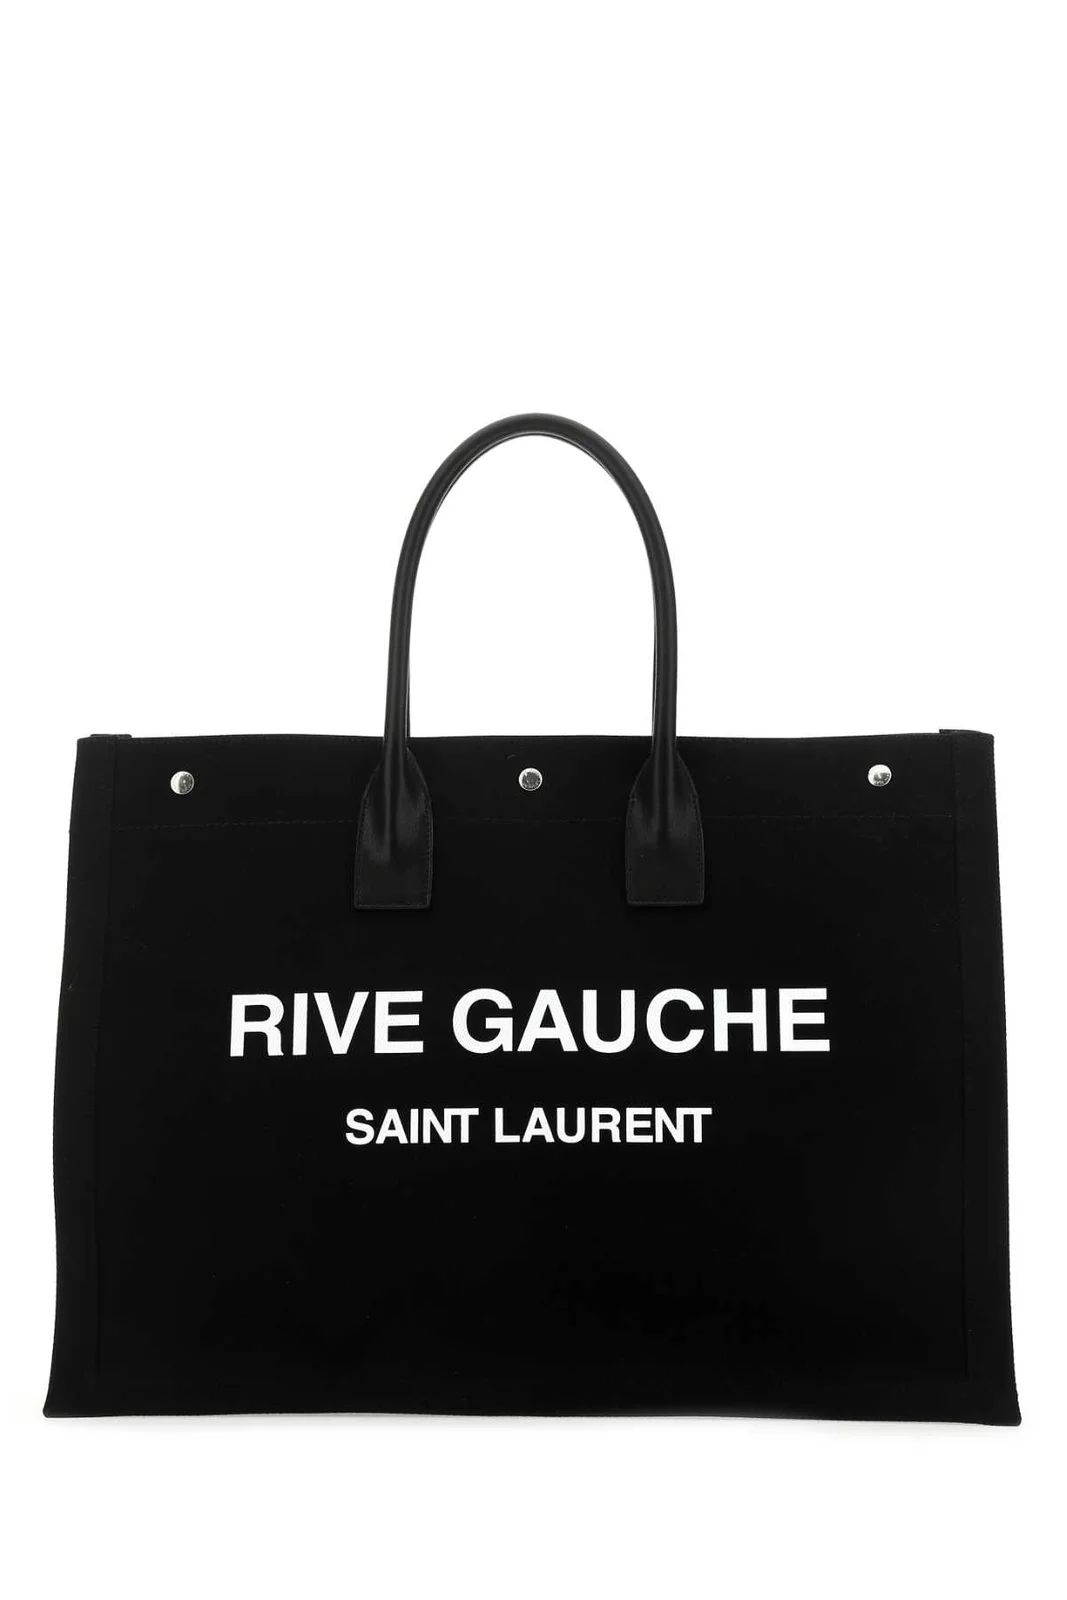 Saint Laurent Rive Gauche Large Tote Bag | Cettire Global